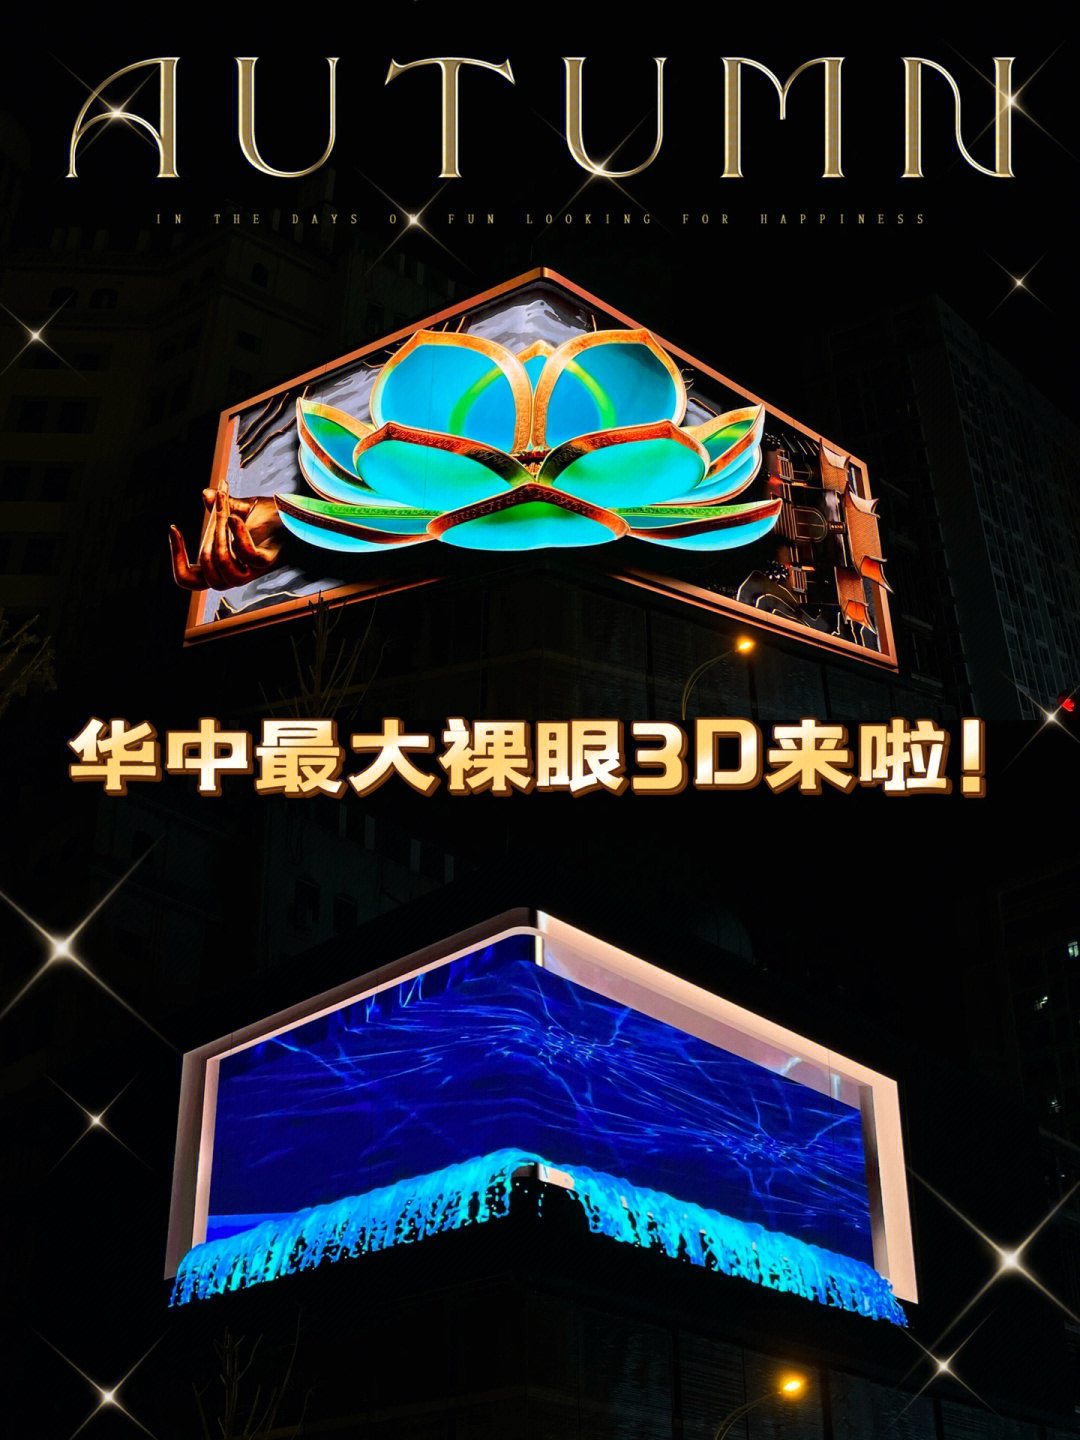 据说是武汉乃至华中最大的裸眼3d屏幕!足足有999平呢!